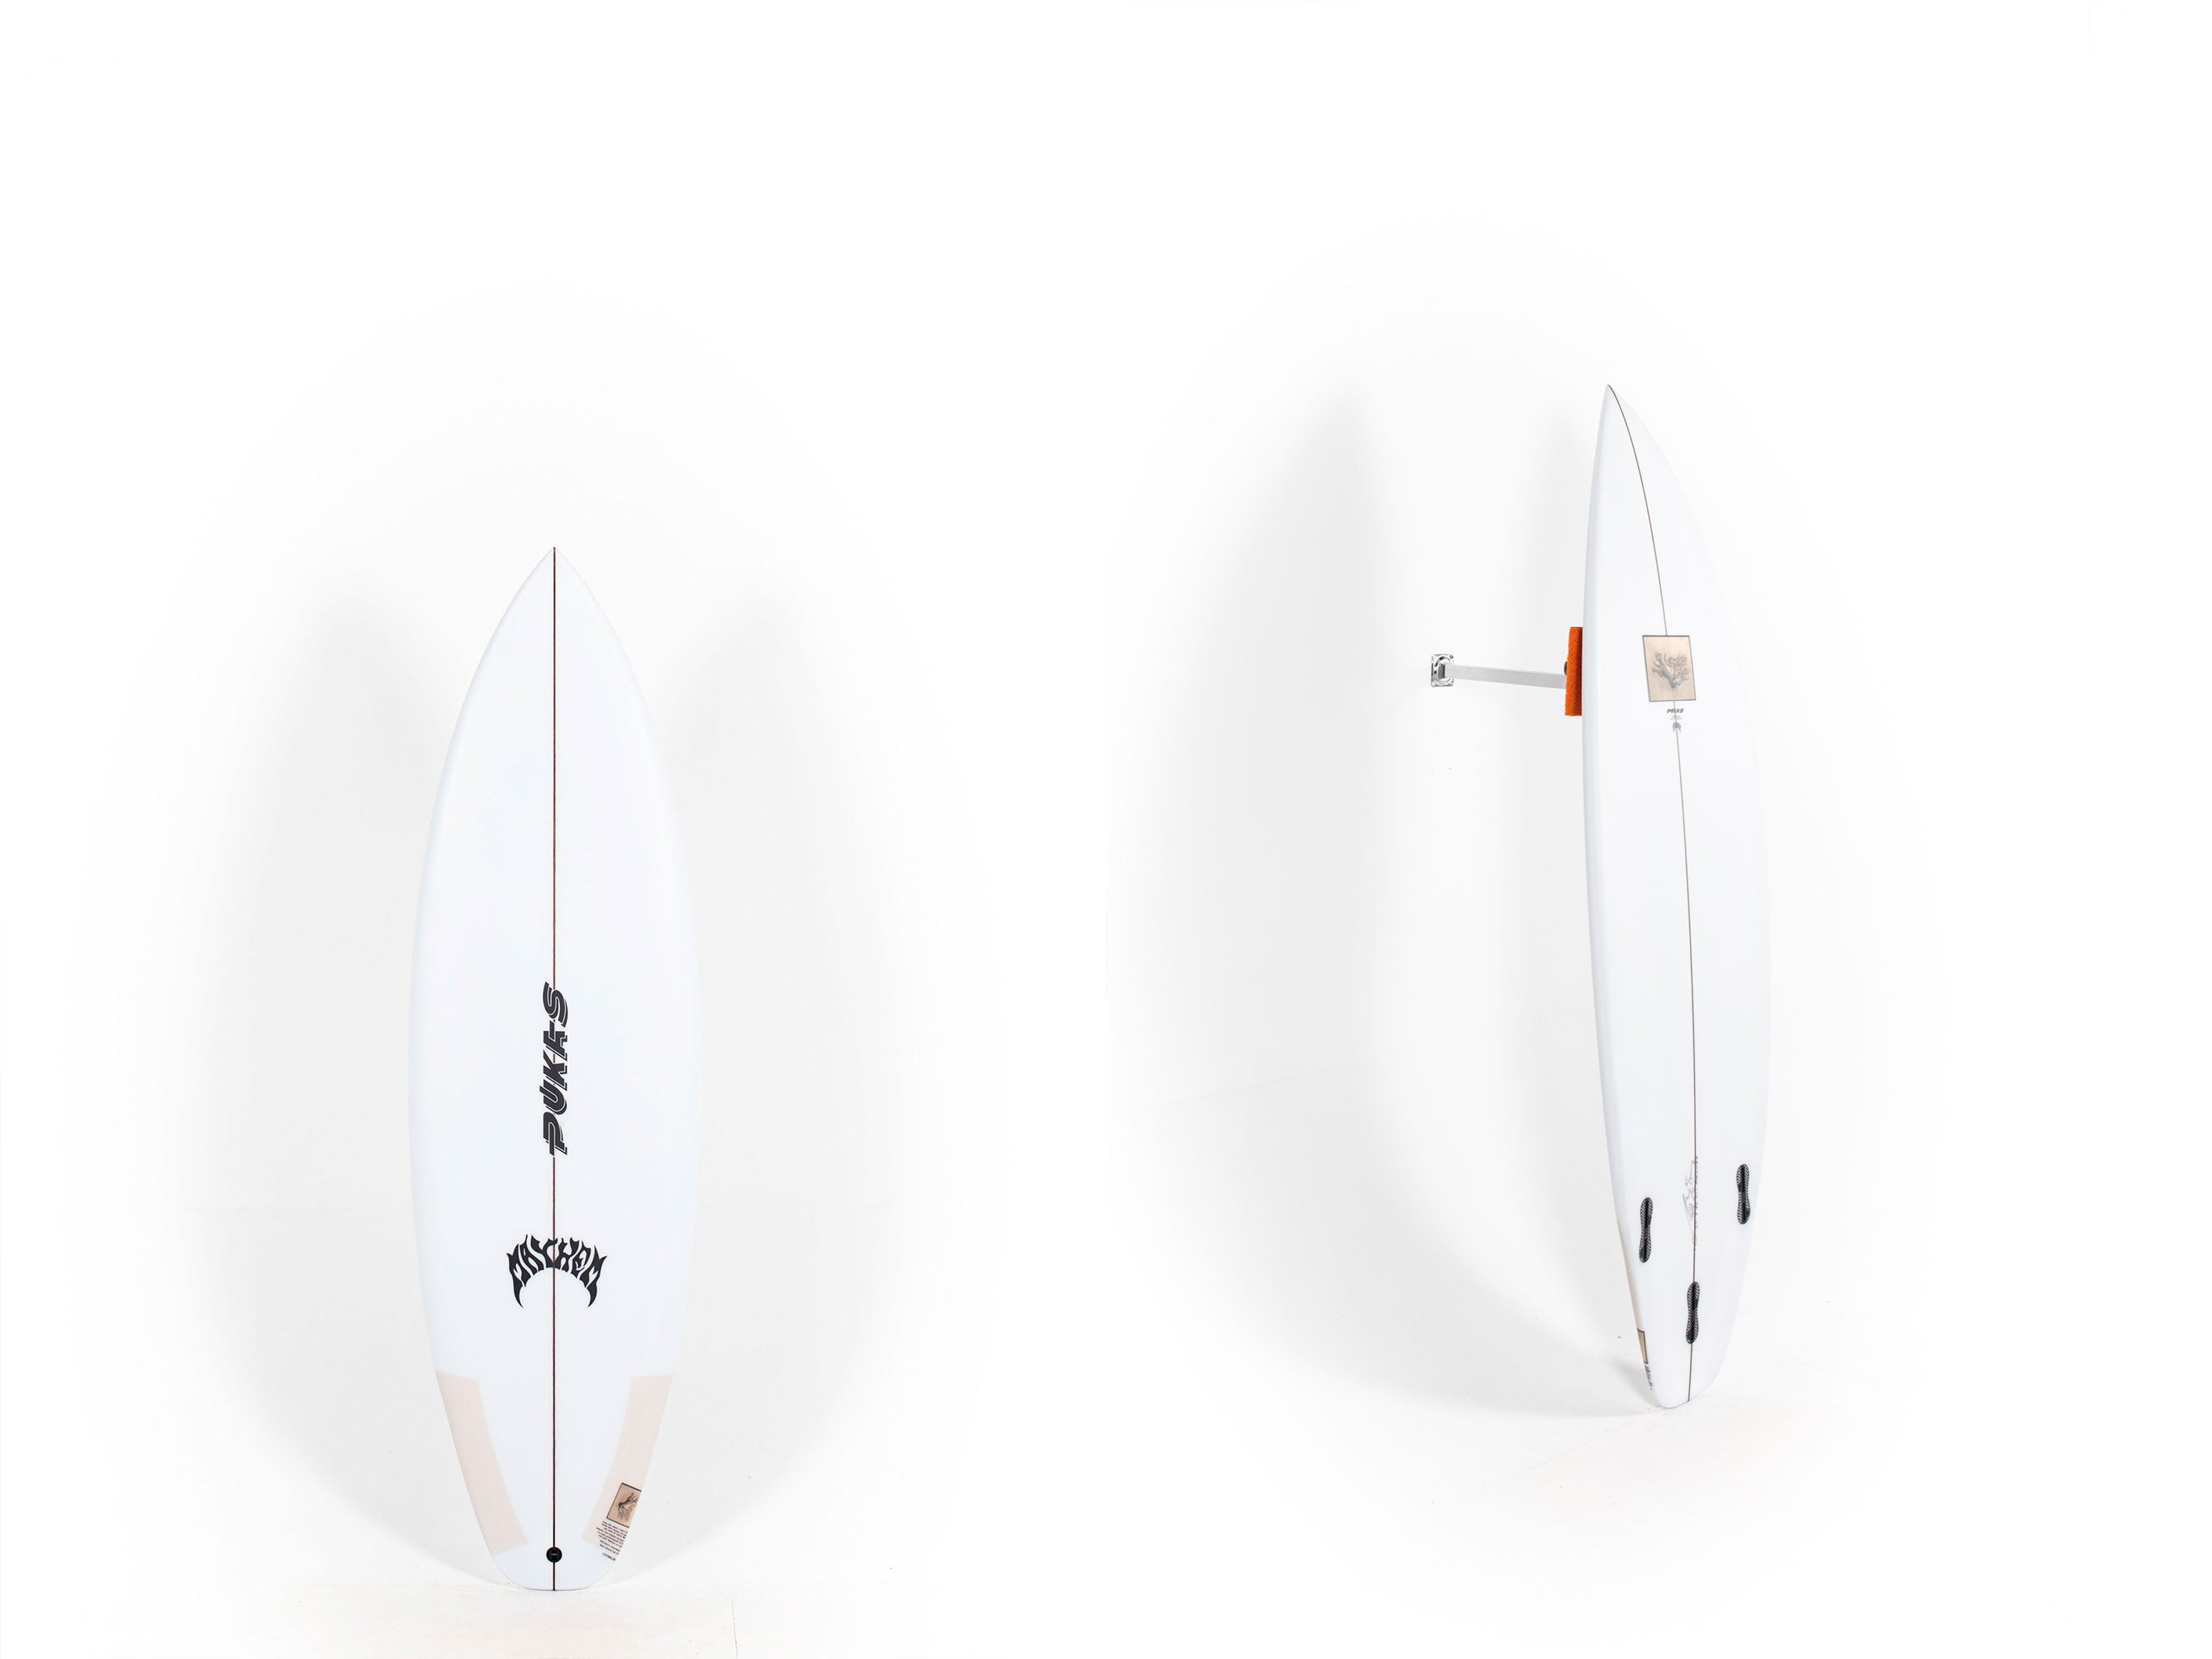 Pukas Surfboard - HYPERLINK by Matt Biolos -  5'10" x 20 x 2.45 - 31L - PM01127